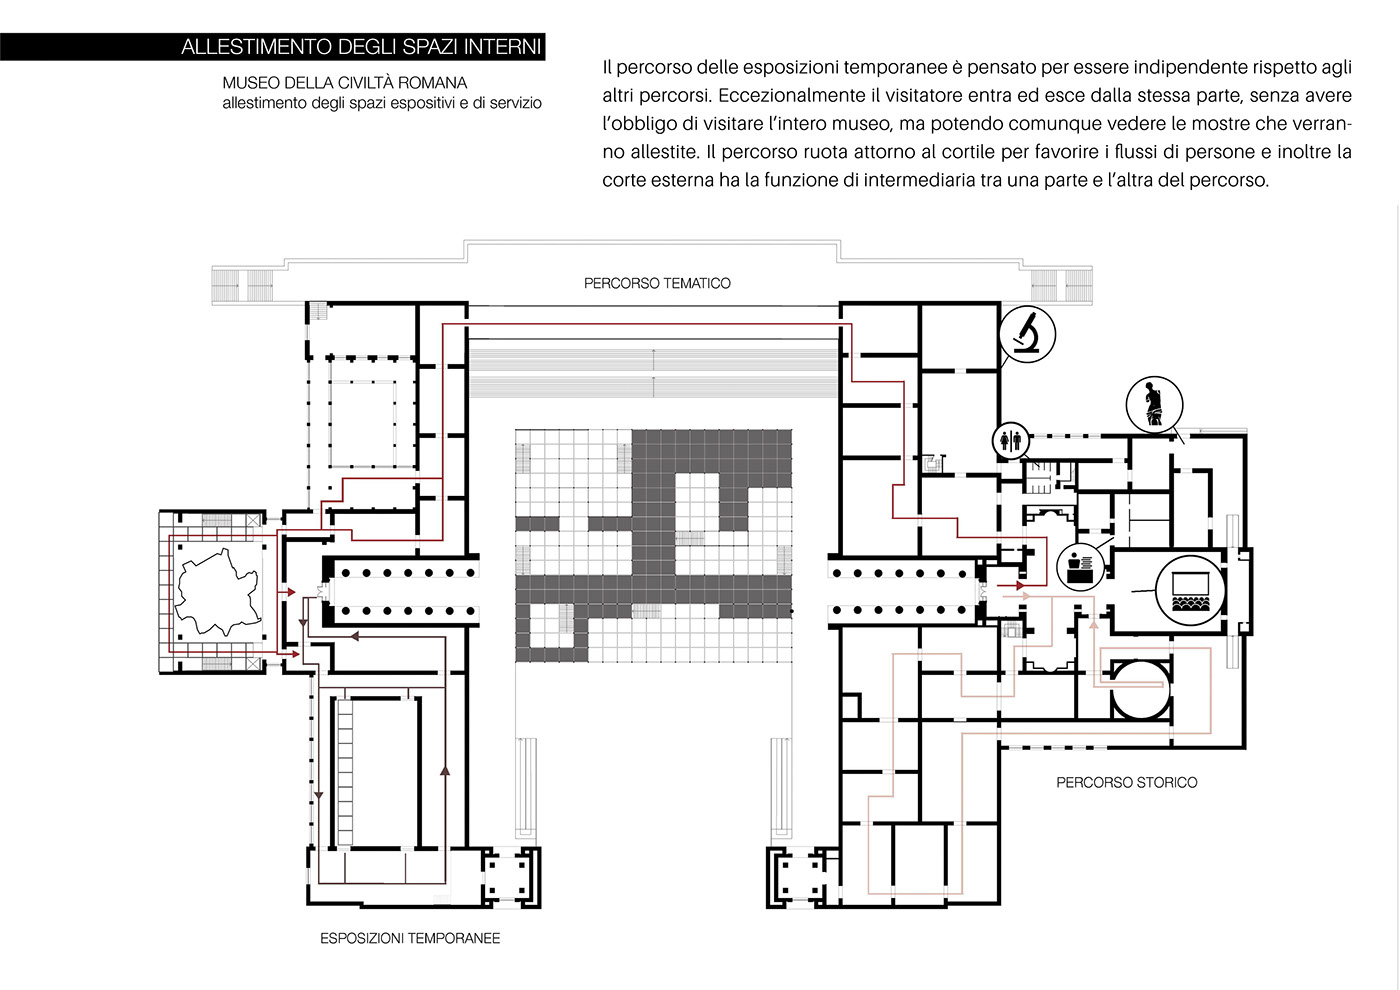 design architecture museum interiordesign progettazione Project thesis degree Interior architettura